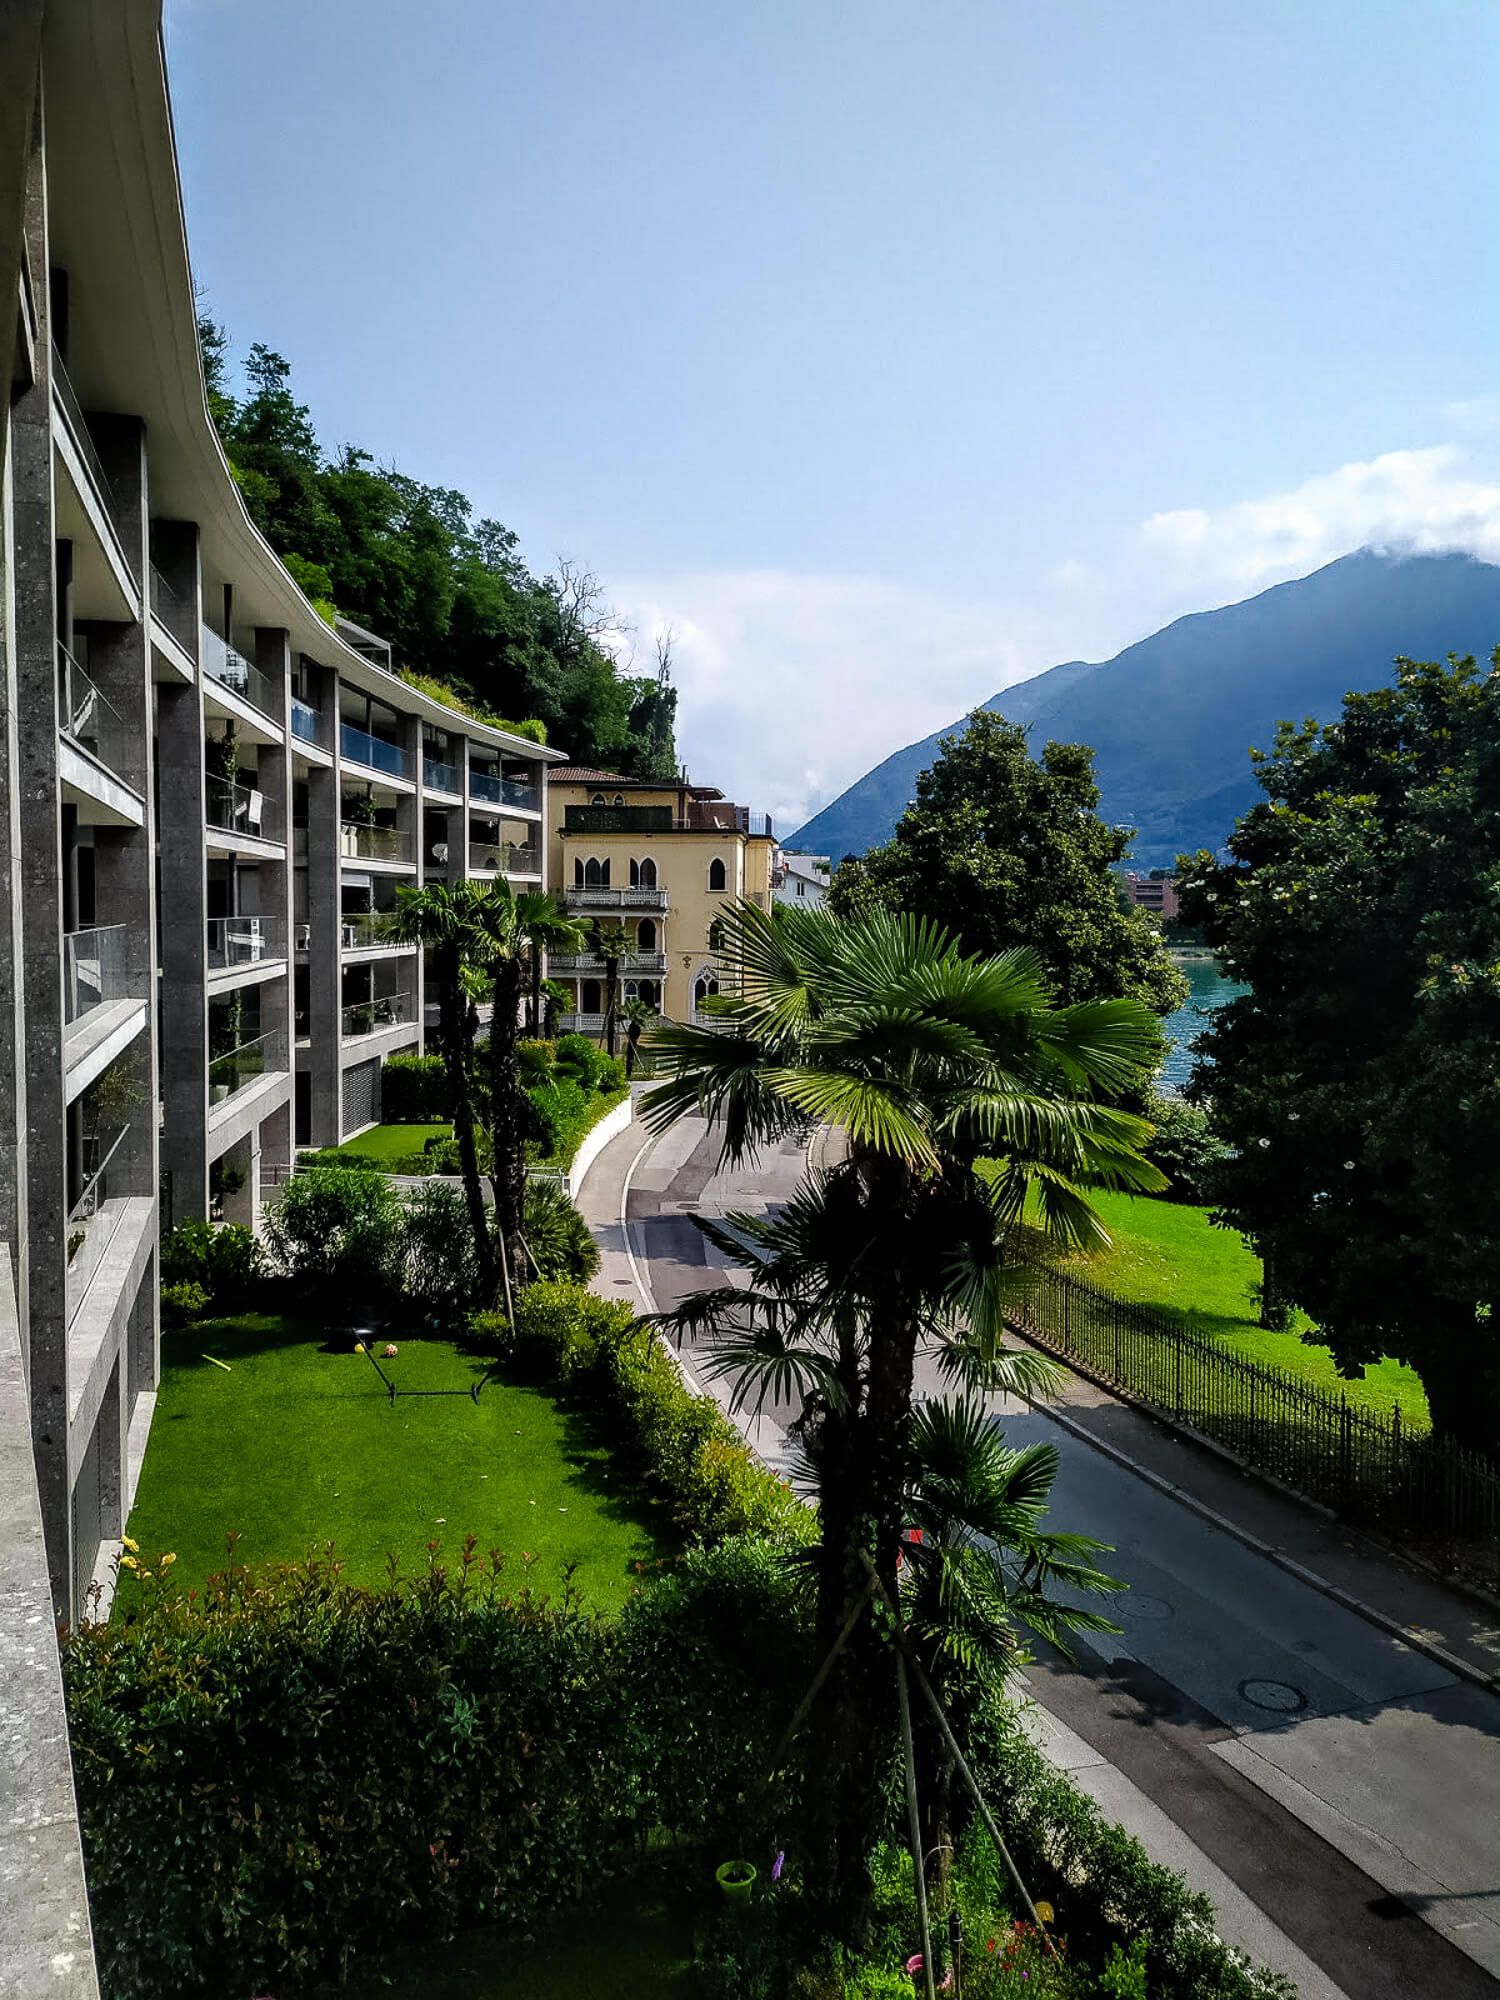 Reisetipps - Review - Urlaub in der Schweiz, in Melide, Lugano 64